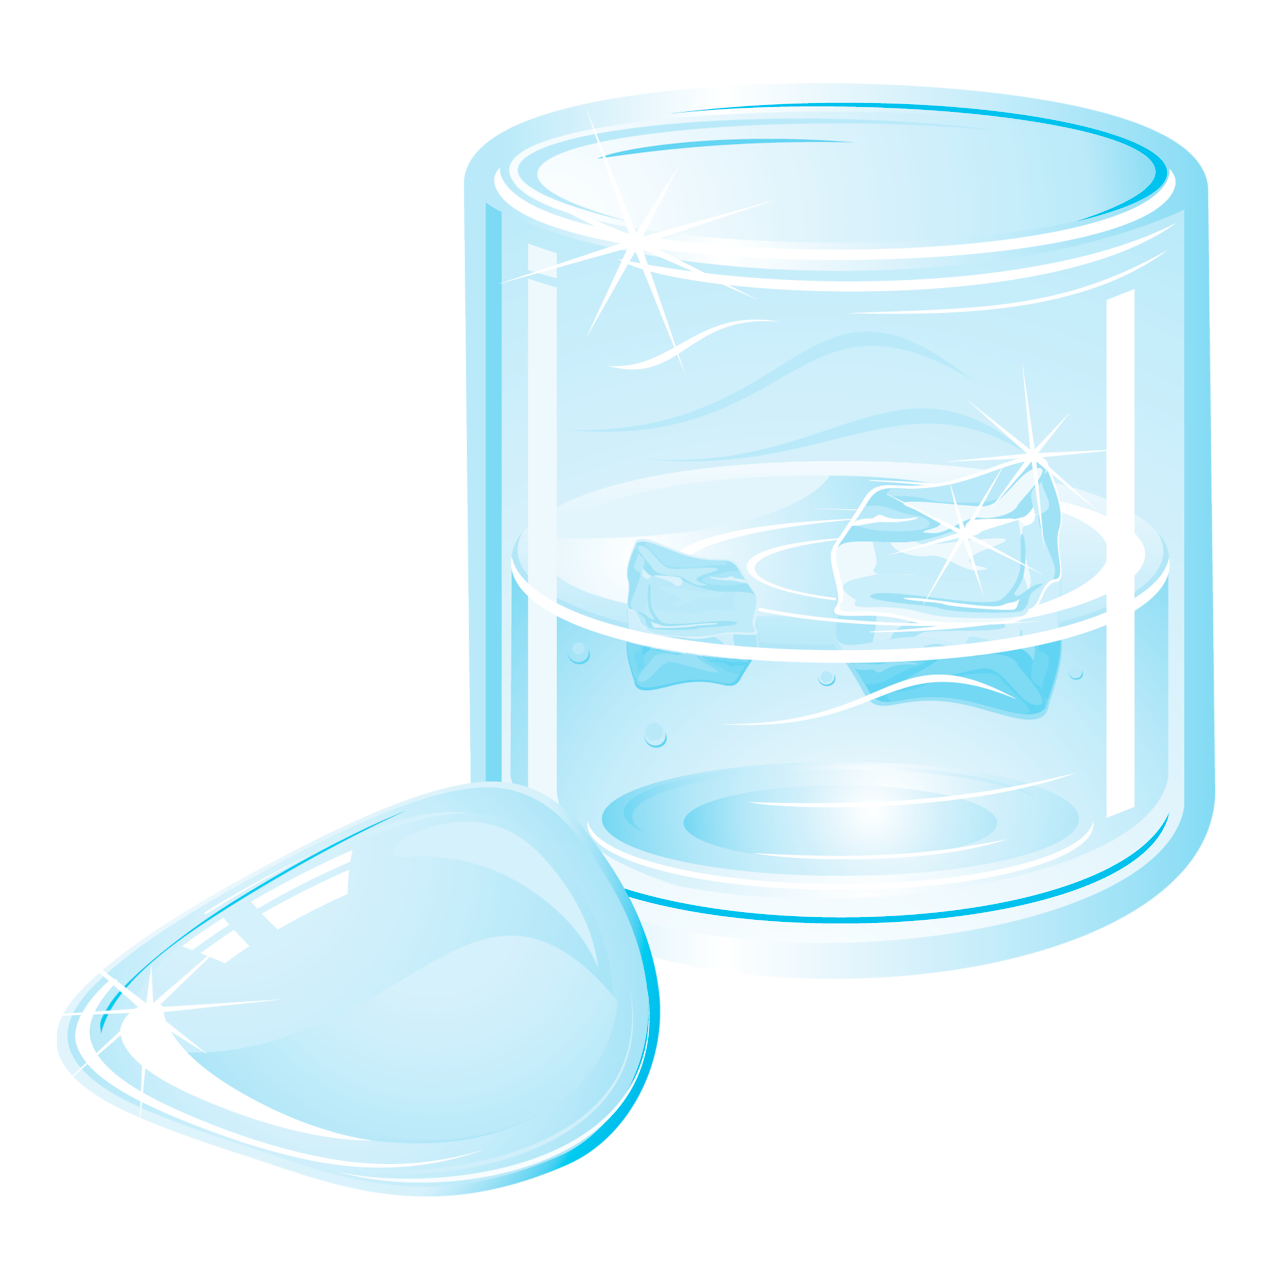 Bicchiere (riempito d'acqua)